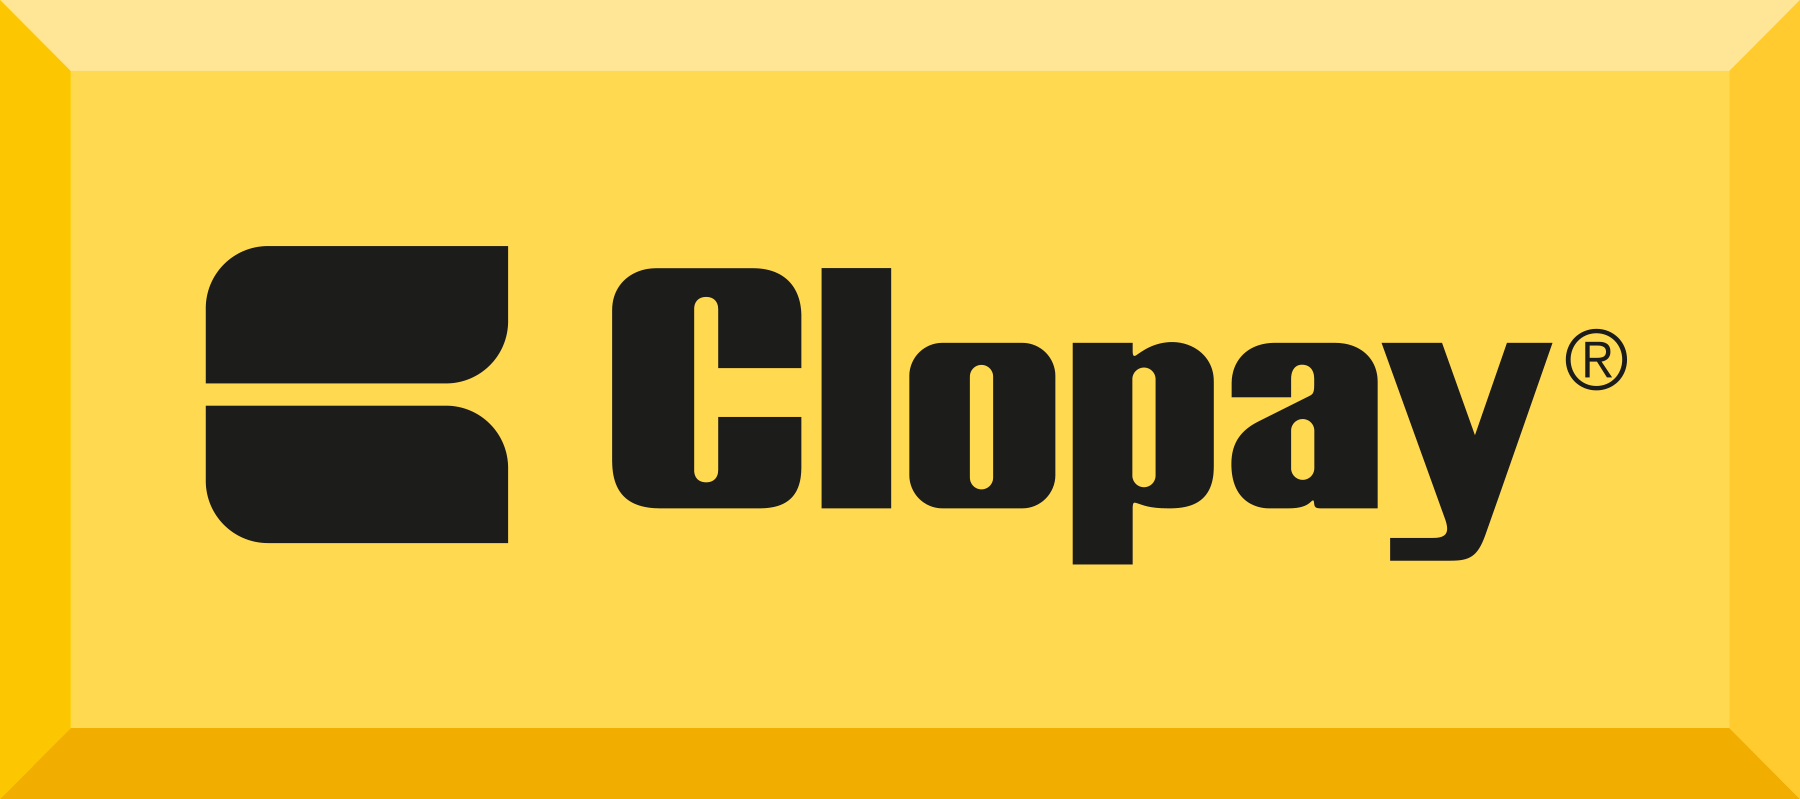 Clopay GoldBar- trusted brands- Nashville Garage Door